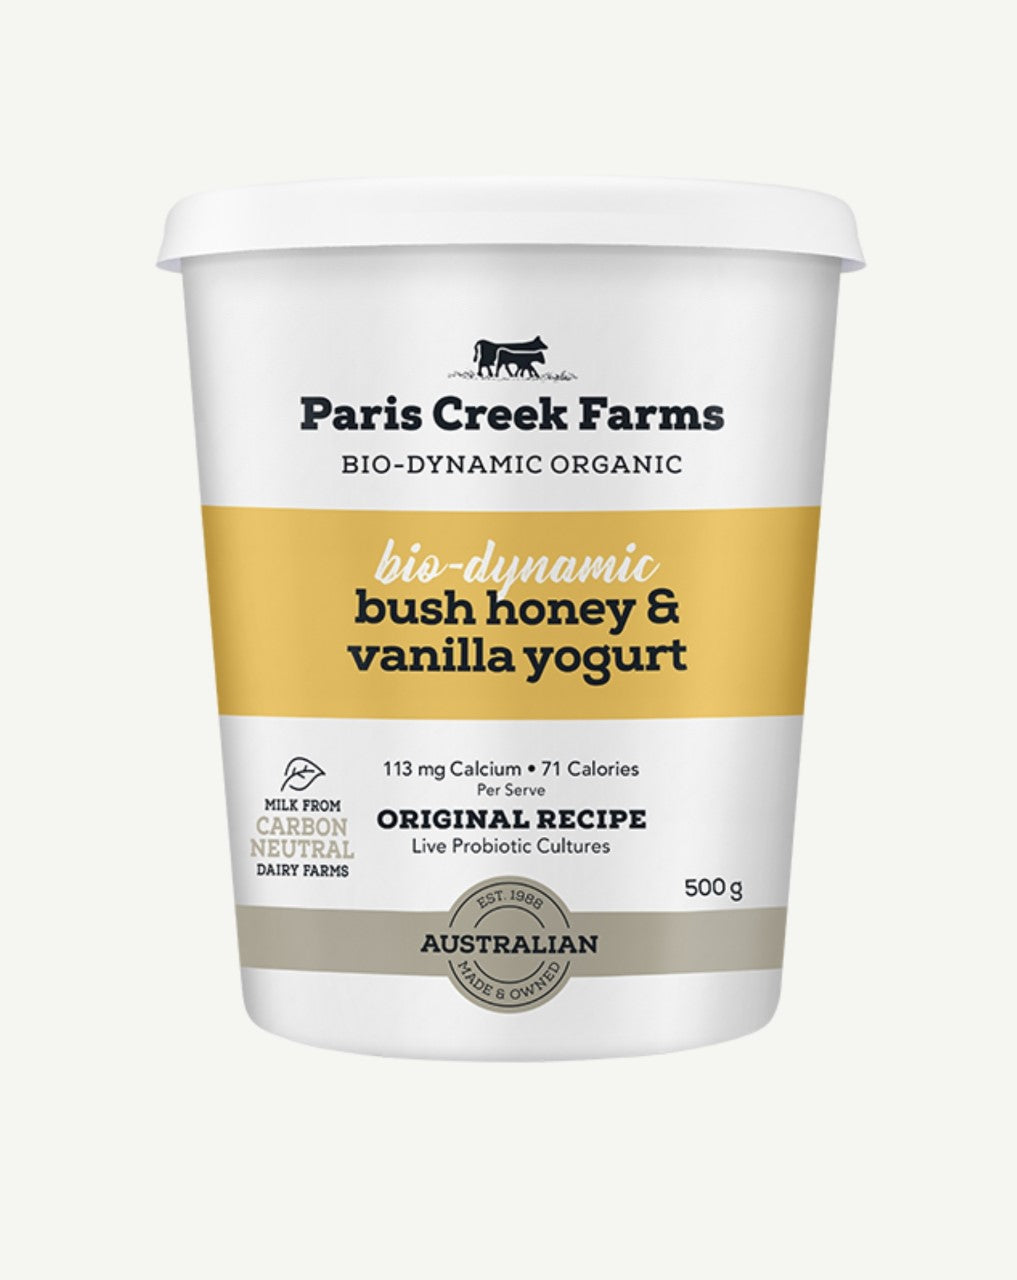 Bio-dynamic Bush Honey & Vanilla Yogurt